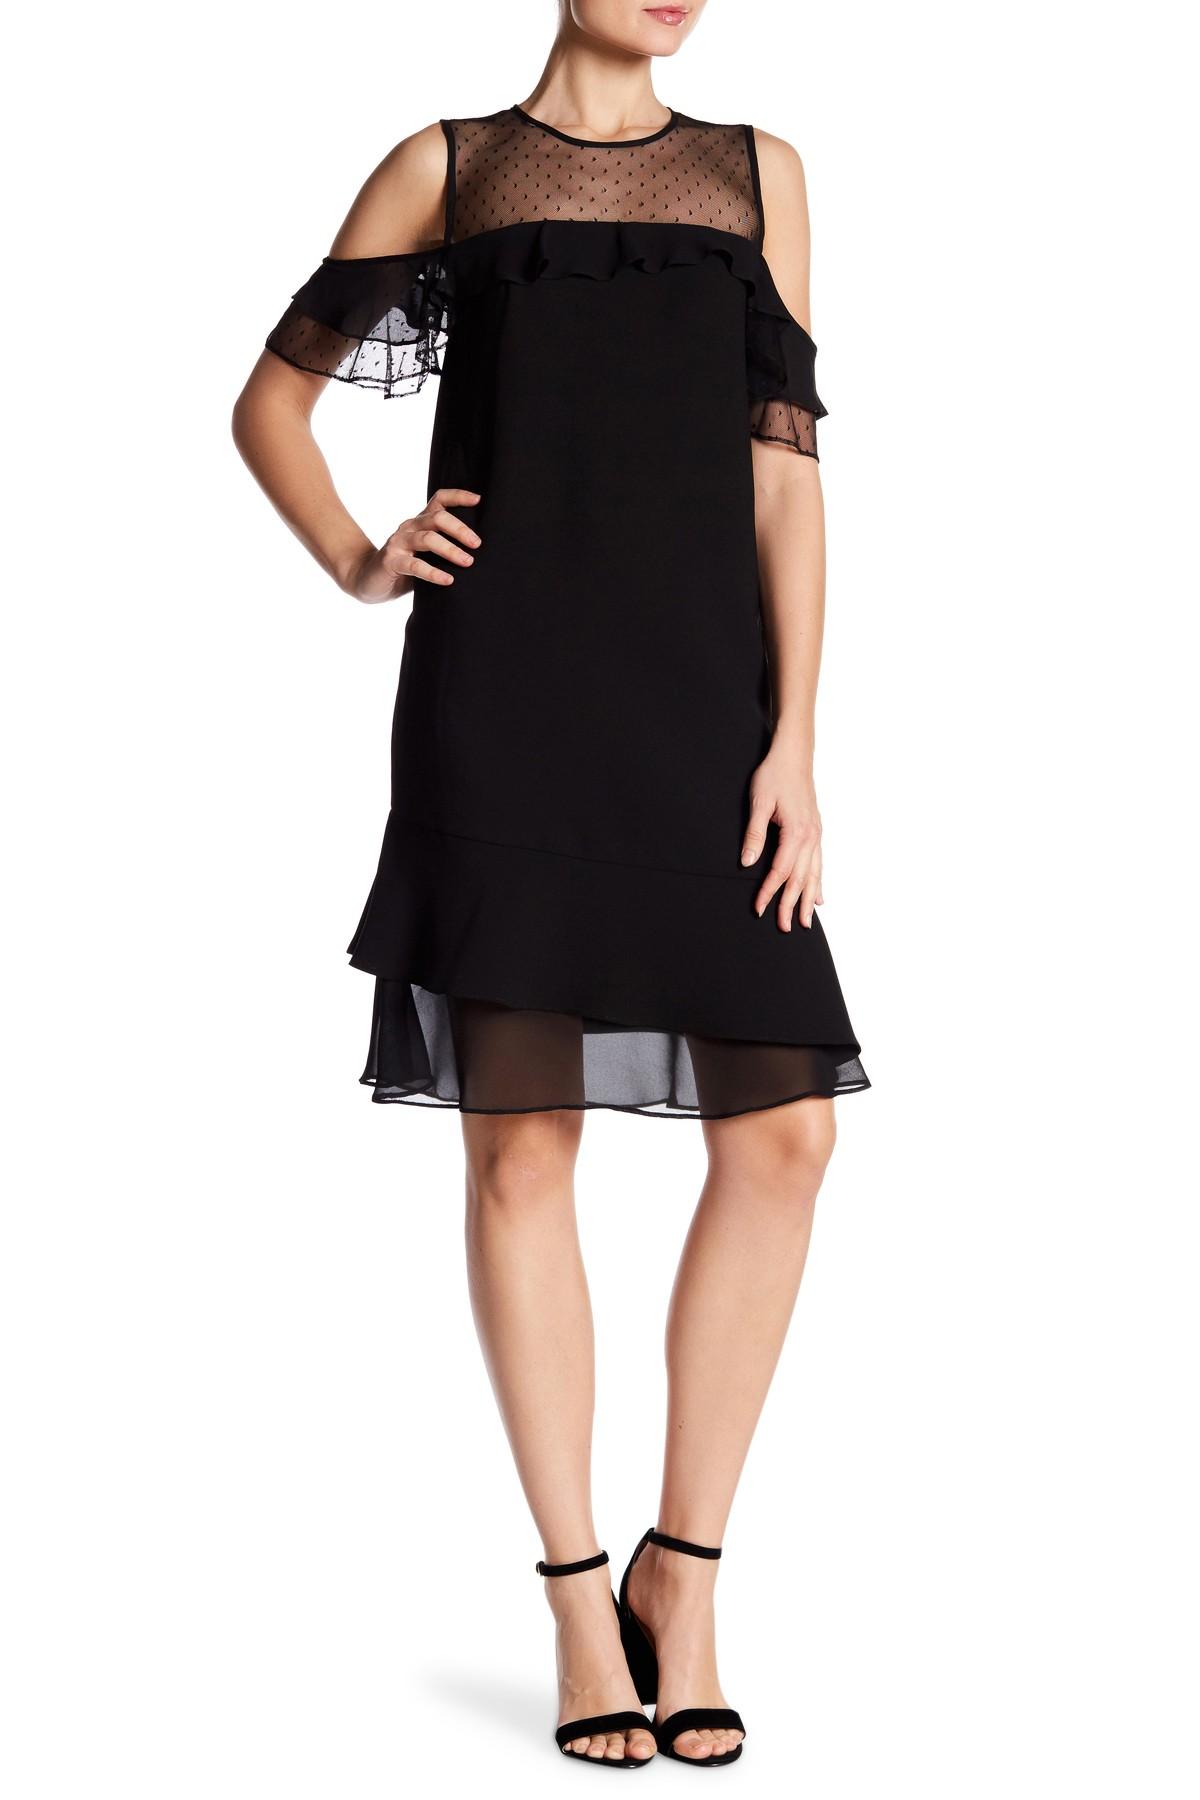 Nanette Nanette Lepore Synthetic Cold Shoulder Mesh Dress in Black - Lyst